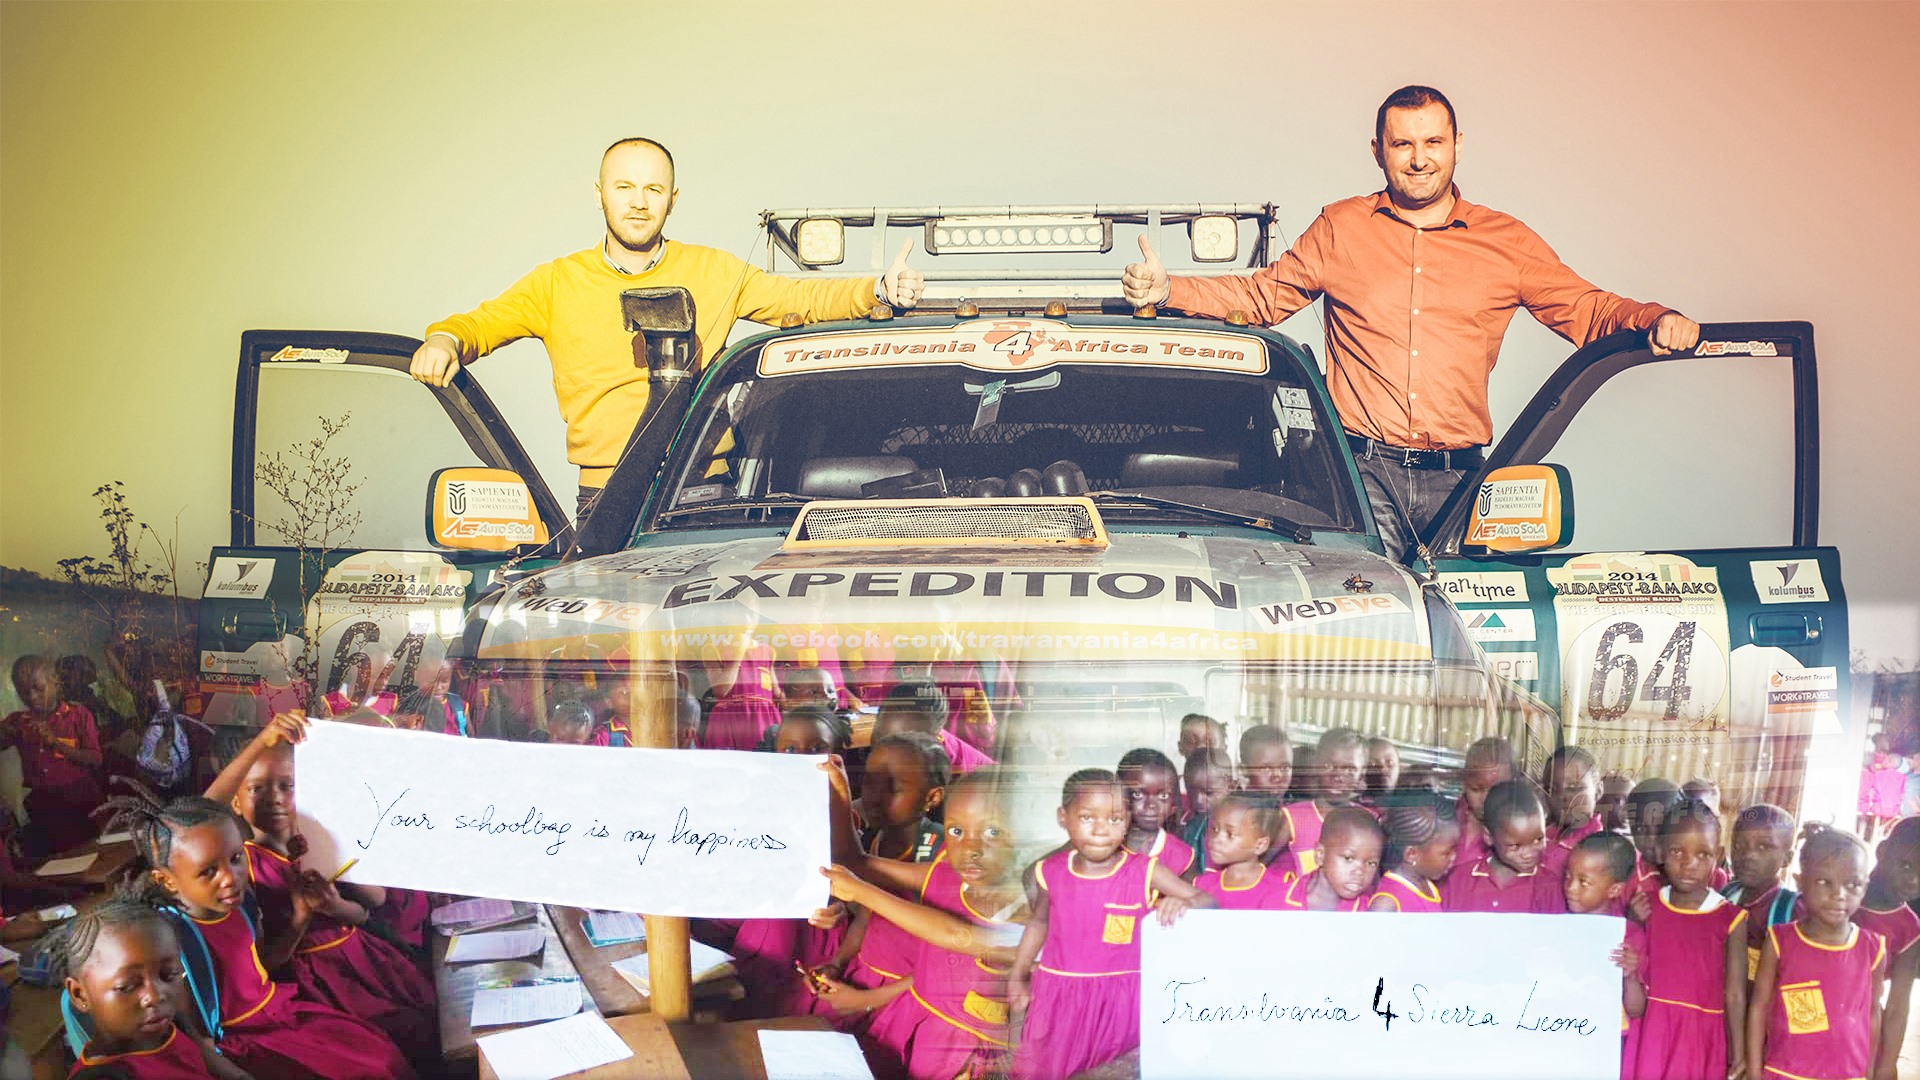 Transilvania4SierraLeone -Doi clujeni cu spirit de aventură vor străbate 9000 km într-o cursă de off-road până în Africa pentru a duce copiilor din Sierra Leone ghiozdane școlare echipate